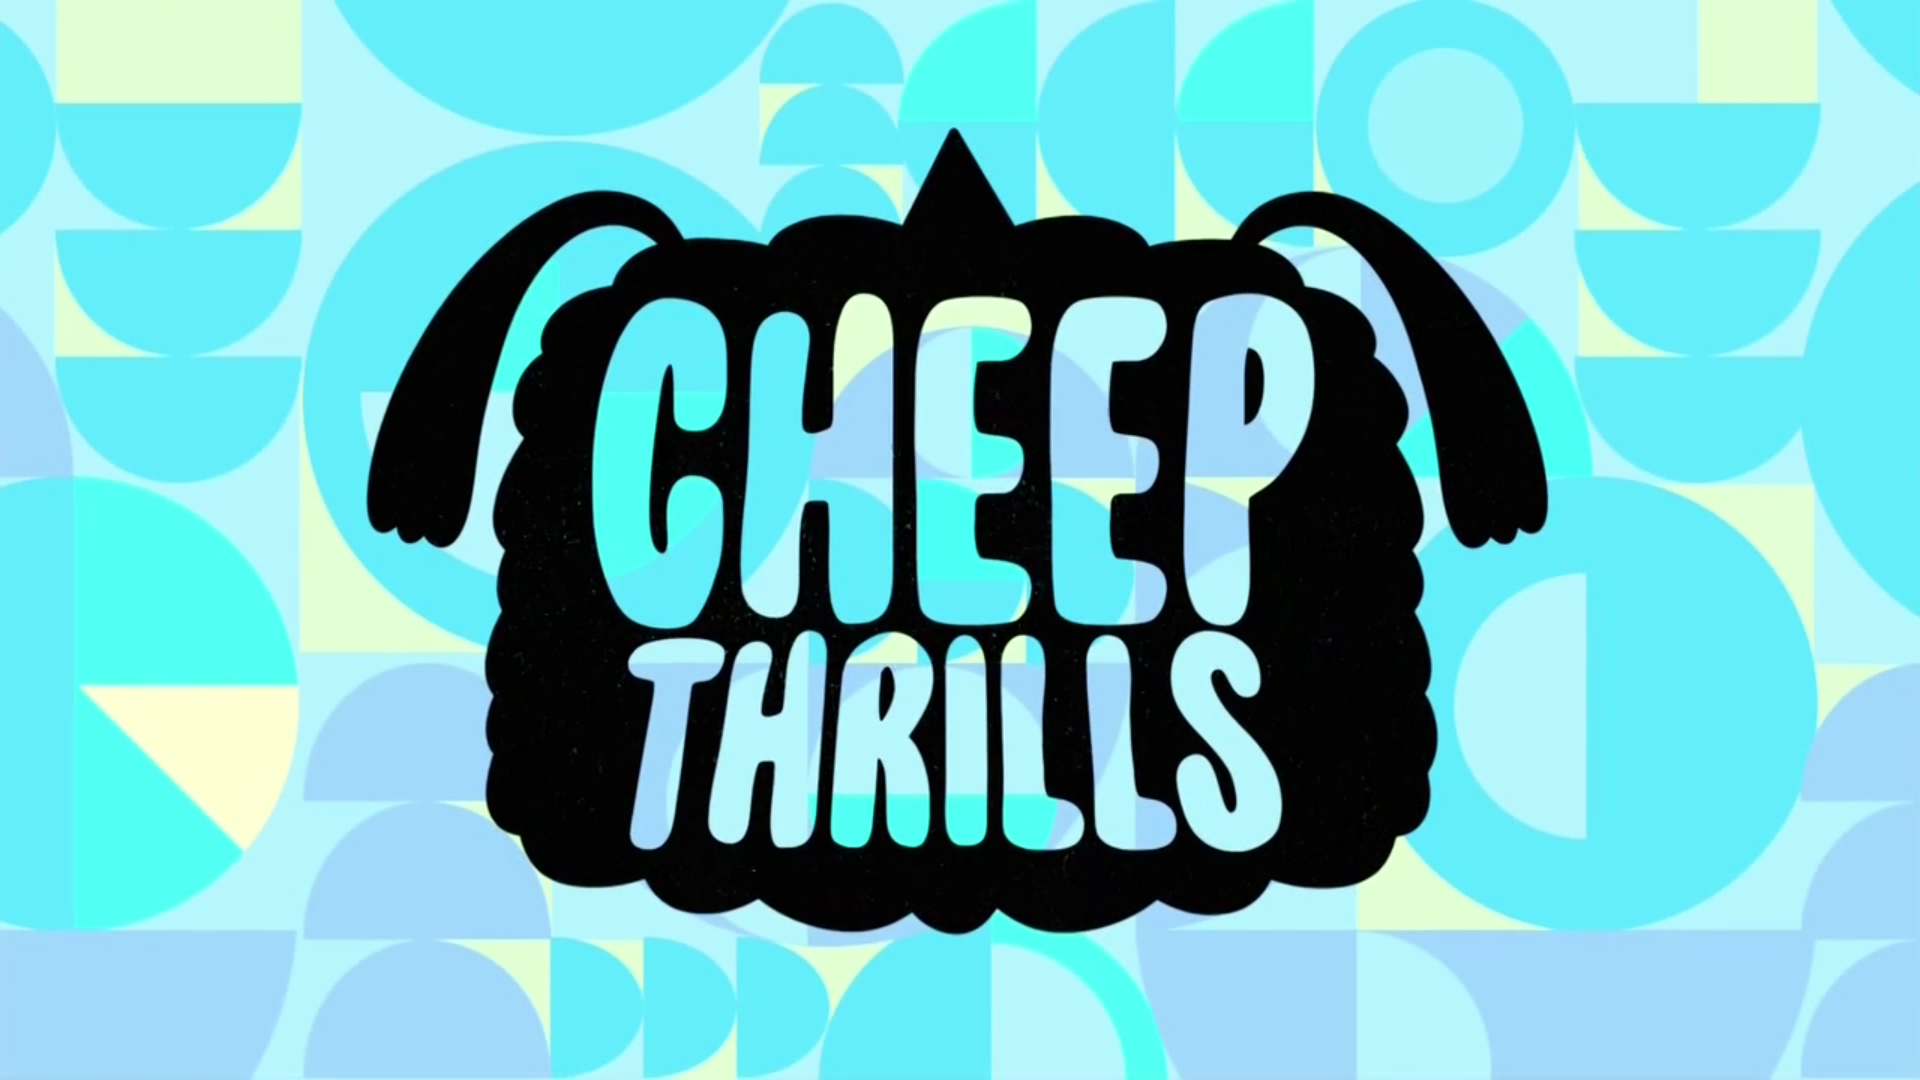 24 серия 1 сезона Cheep Thrills